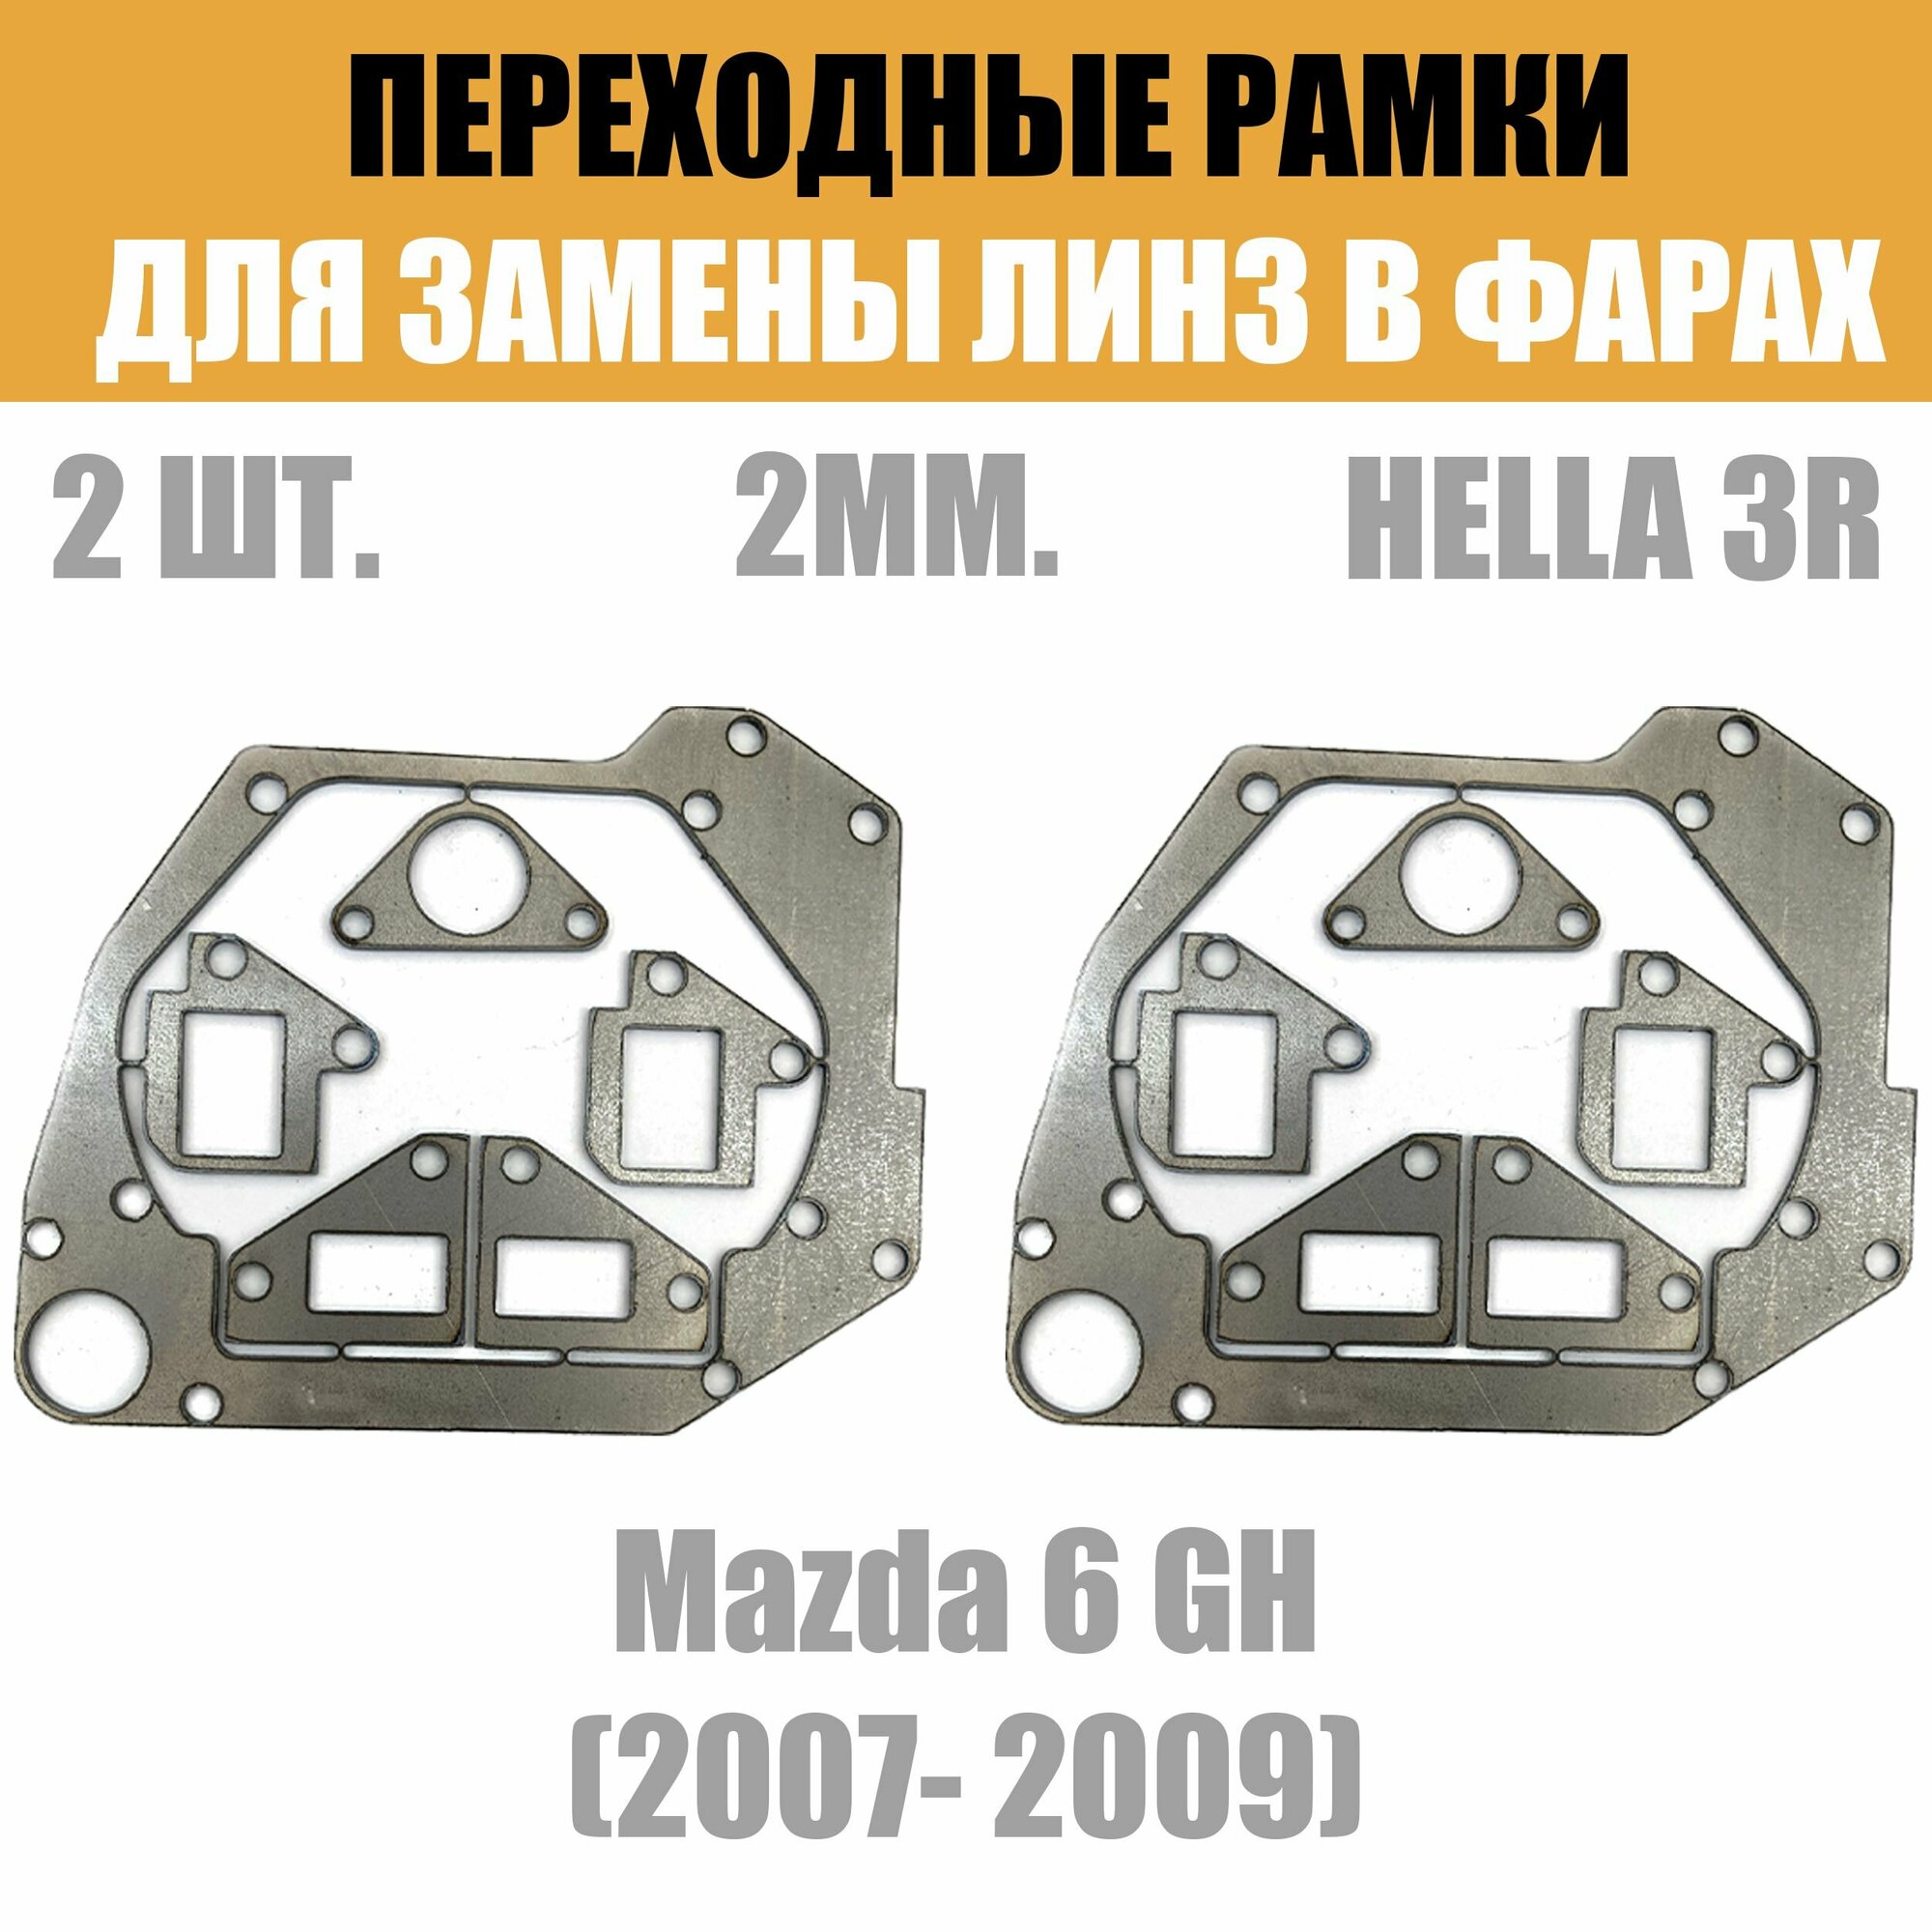 Переходные рамки для линз №47 на Mazda 6 GH (2007- 2009) под модуль Hella 3R/Hella 3 (Комплект 2шт)